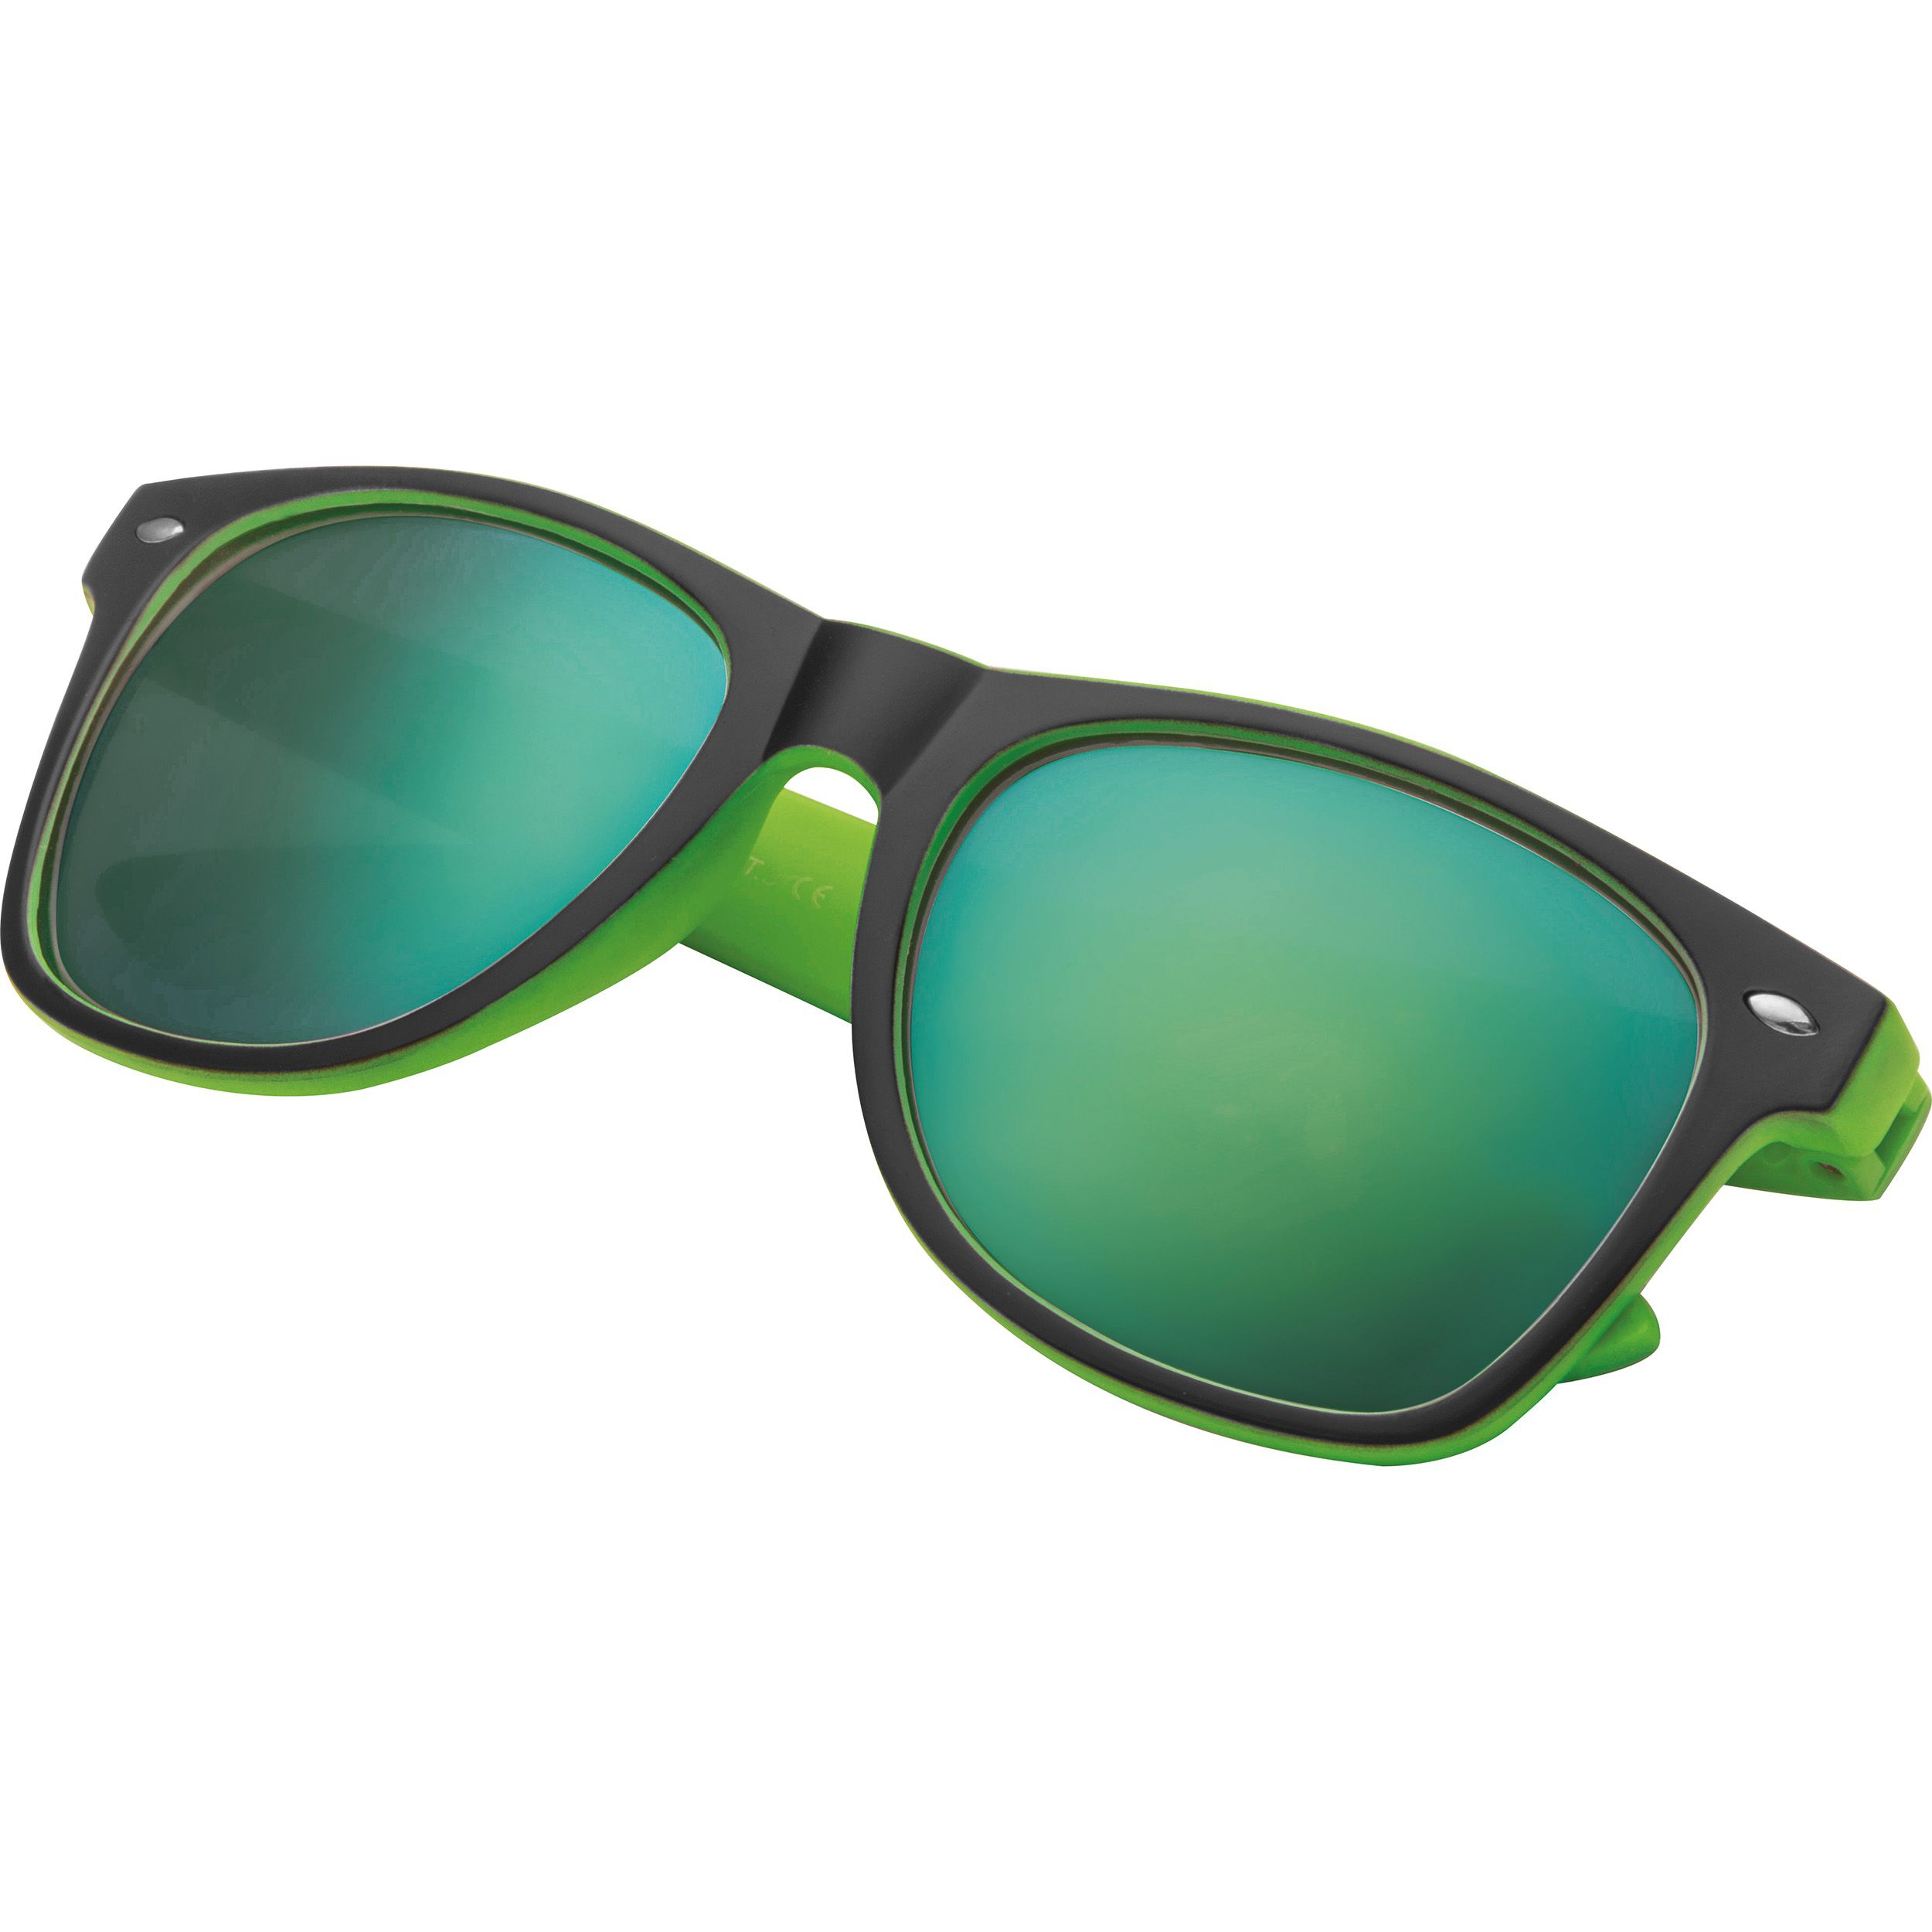 Sonnenbrille aus Kunststoff mit verspiegelten Gläsern, UV 400 Schutz, grün